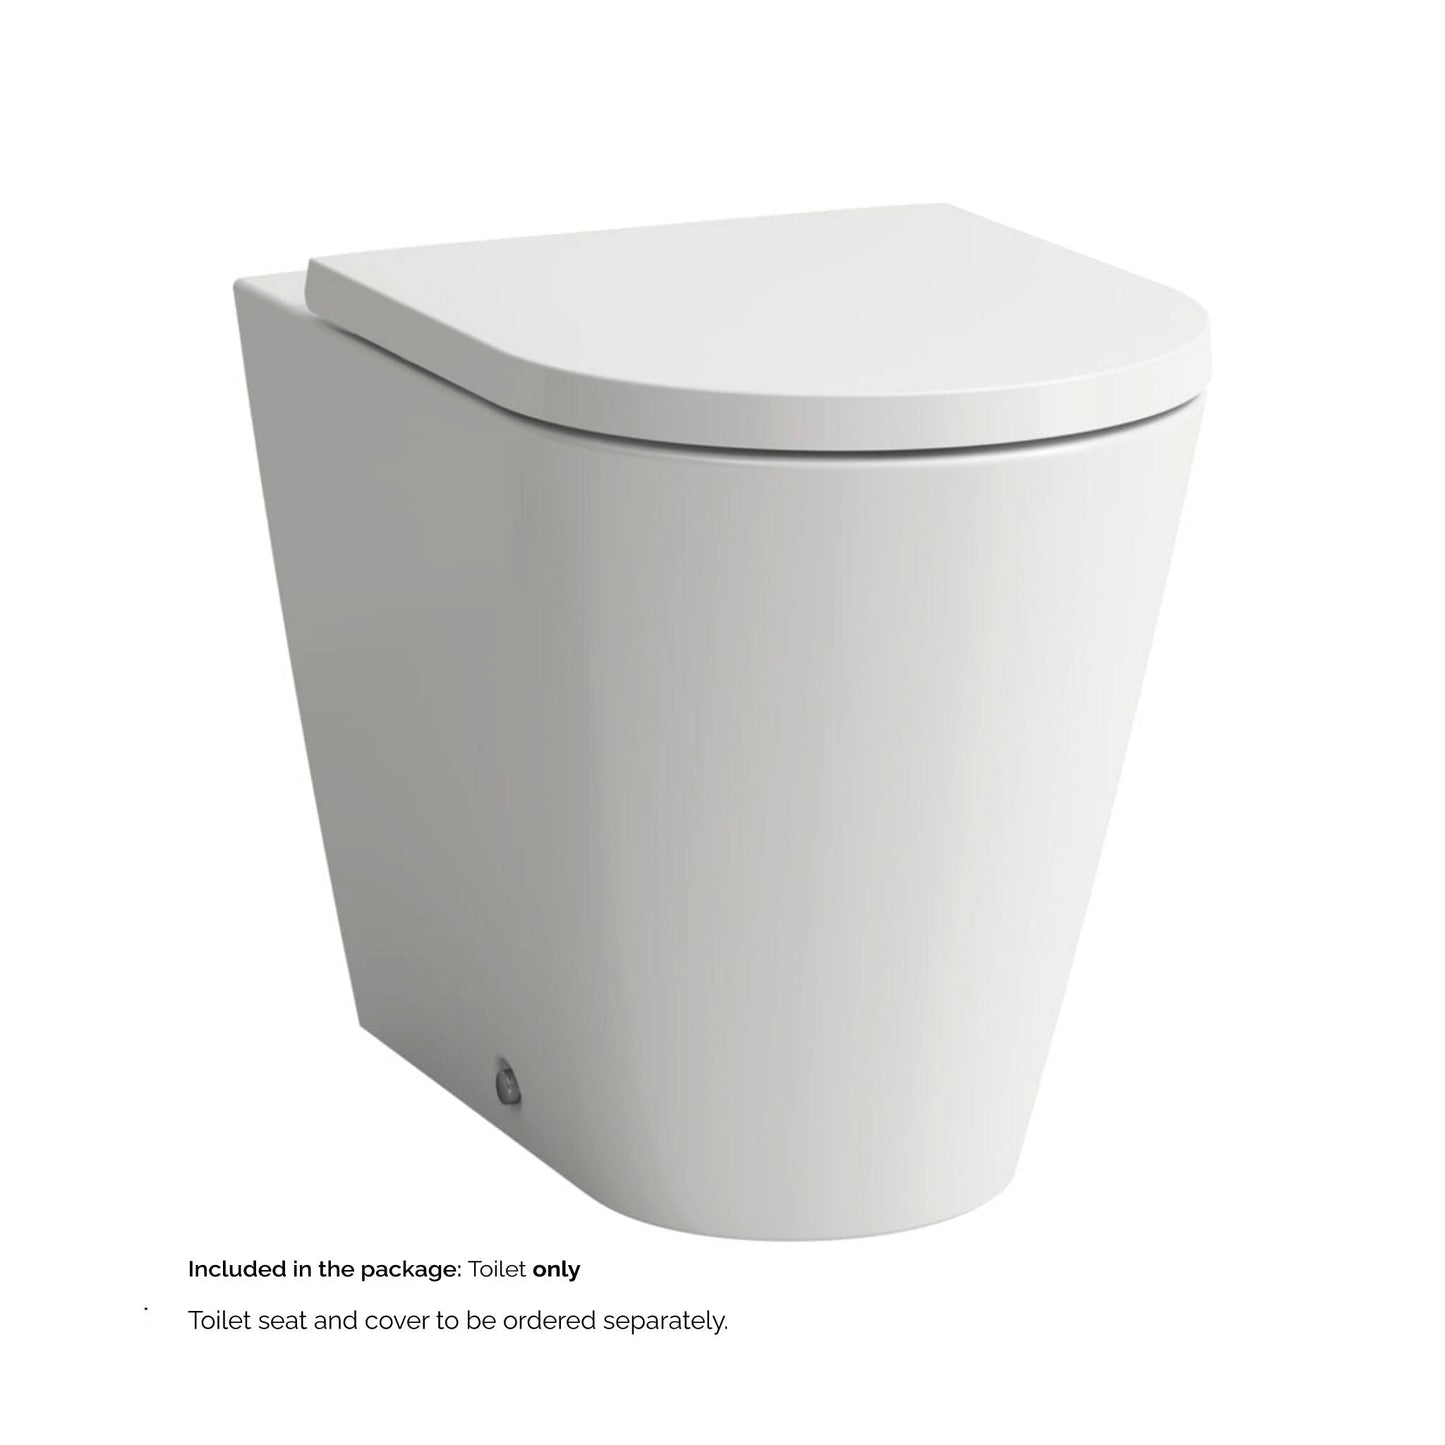 Laufen Kartell 15" x 17" White Dual-Flush Washdown Floor-Mounted Toilet